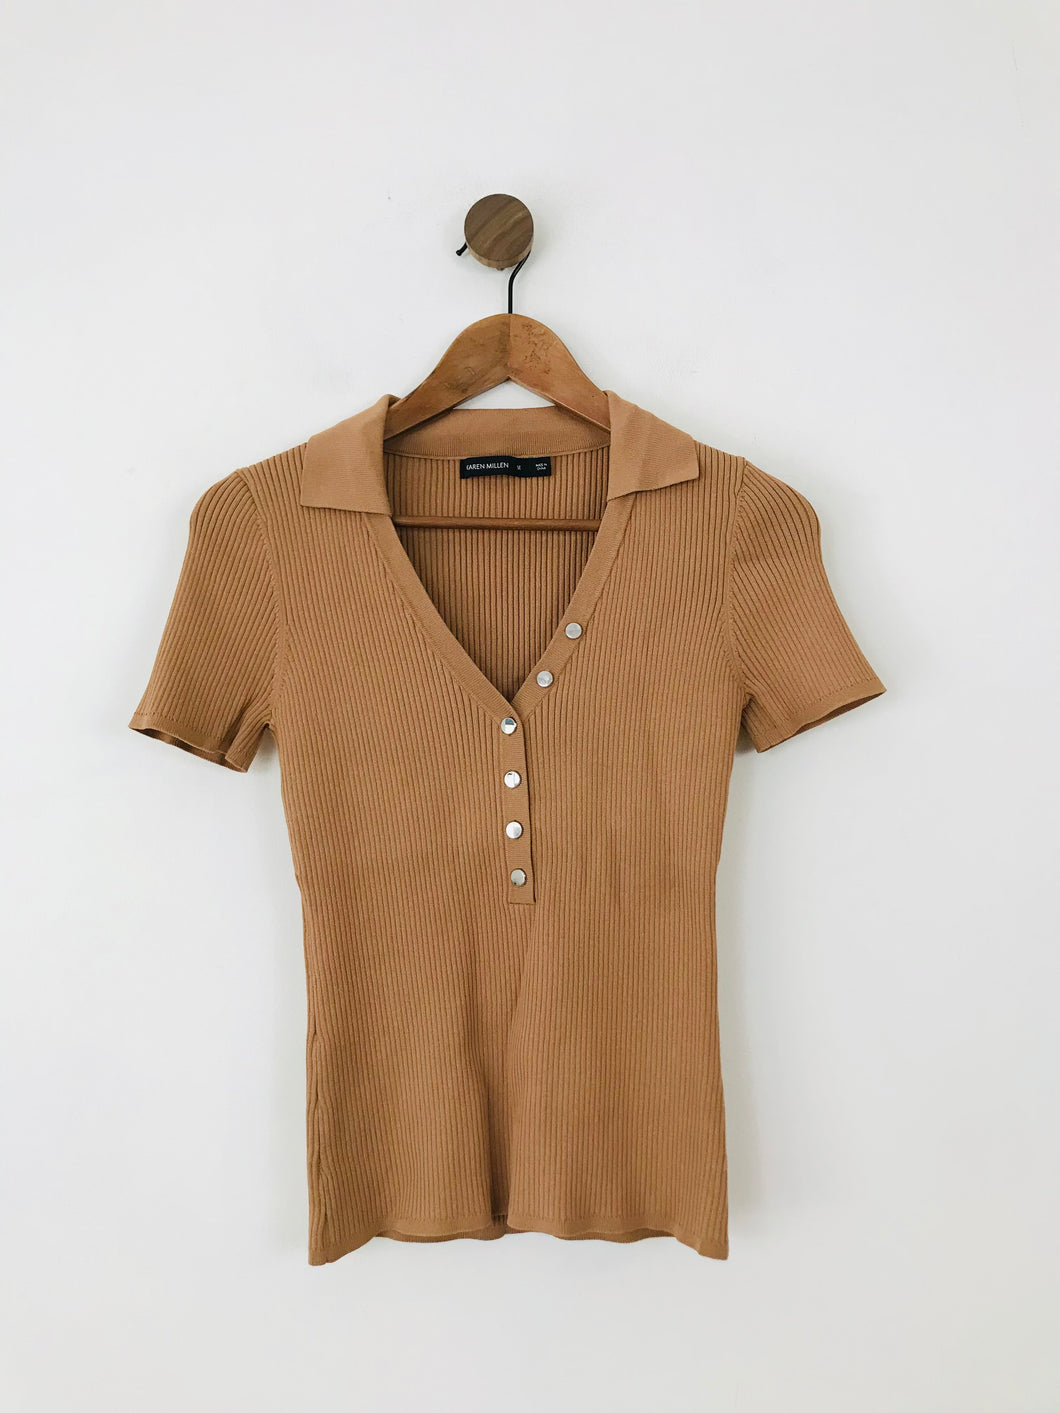 Karen Millen Women's Knit Henley T-Shirt | M UK10-12 | Brown